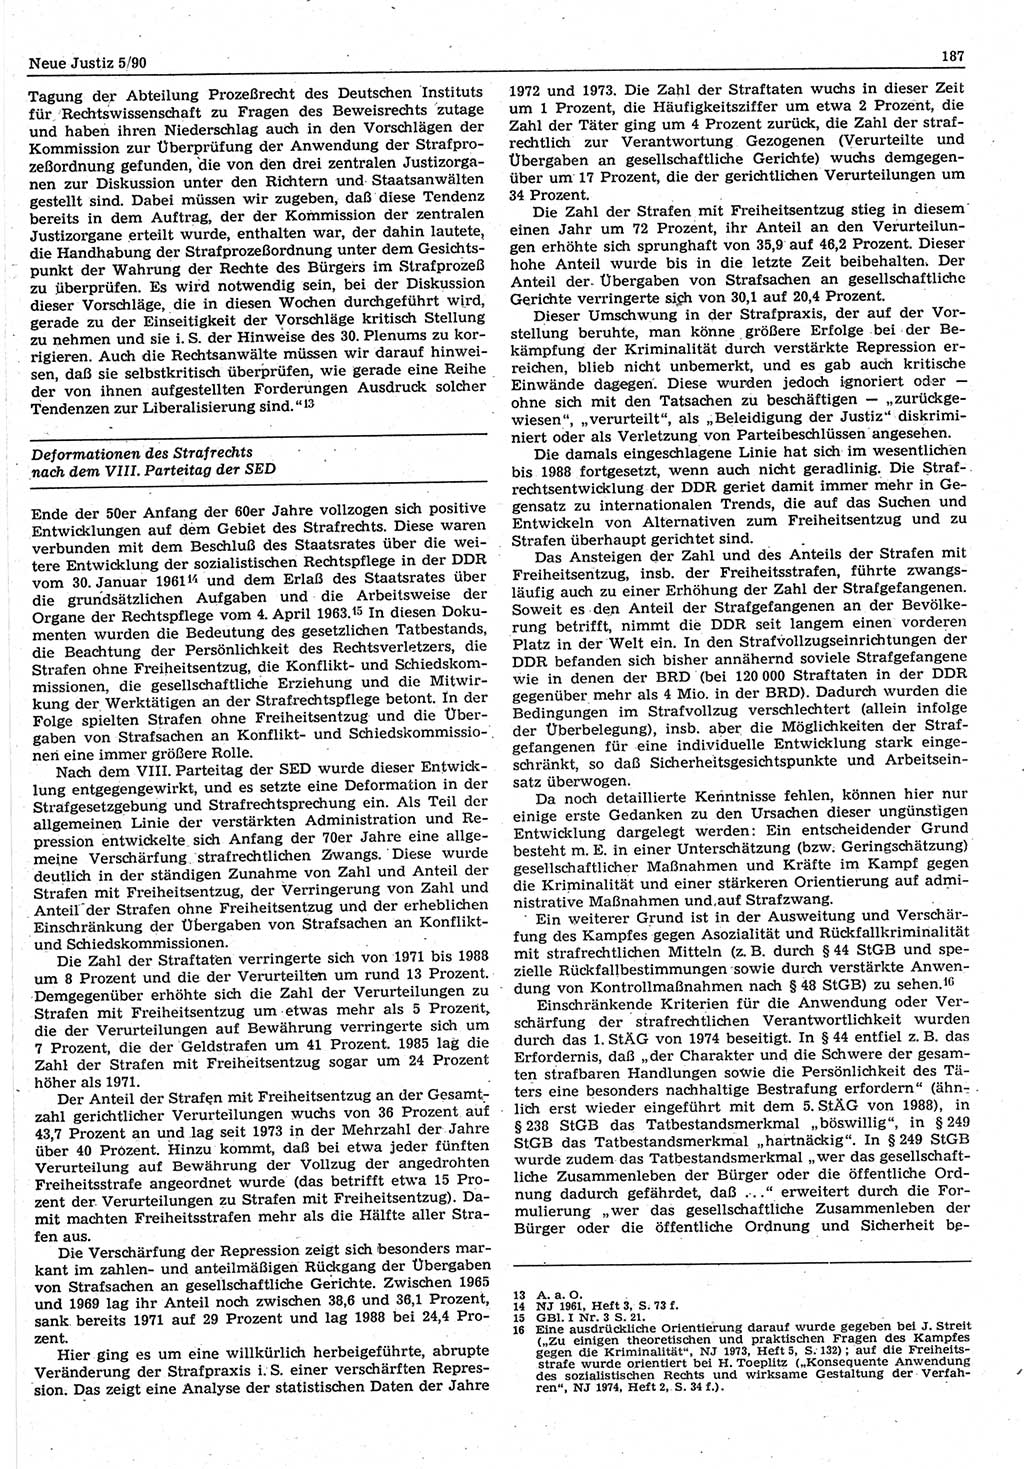 Neue Justiz (NJ), Zeitschrift für Rechtsetzung und Rechtsanwendung [Deutsche Demokratische Republik (DDR)], 44. Jahrgang 1990, Seite 187 (NJ DDR 1990, S. 187)